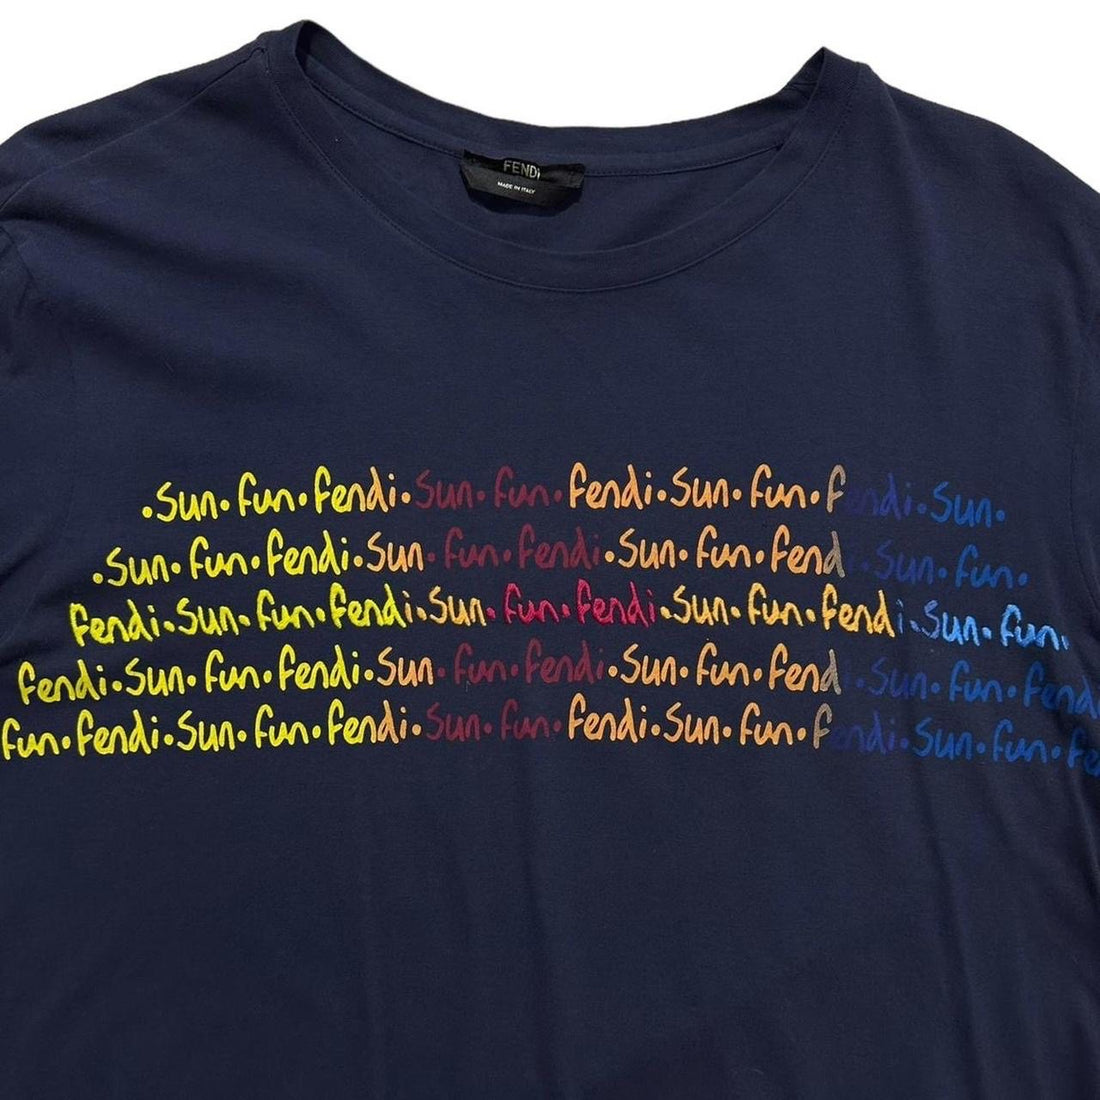 Fendi Sun Fun T-Shirt